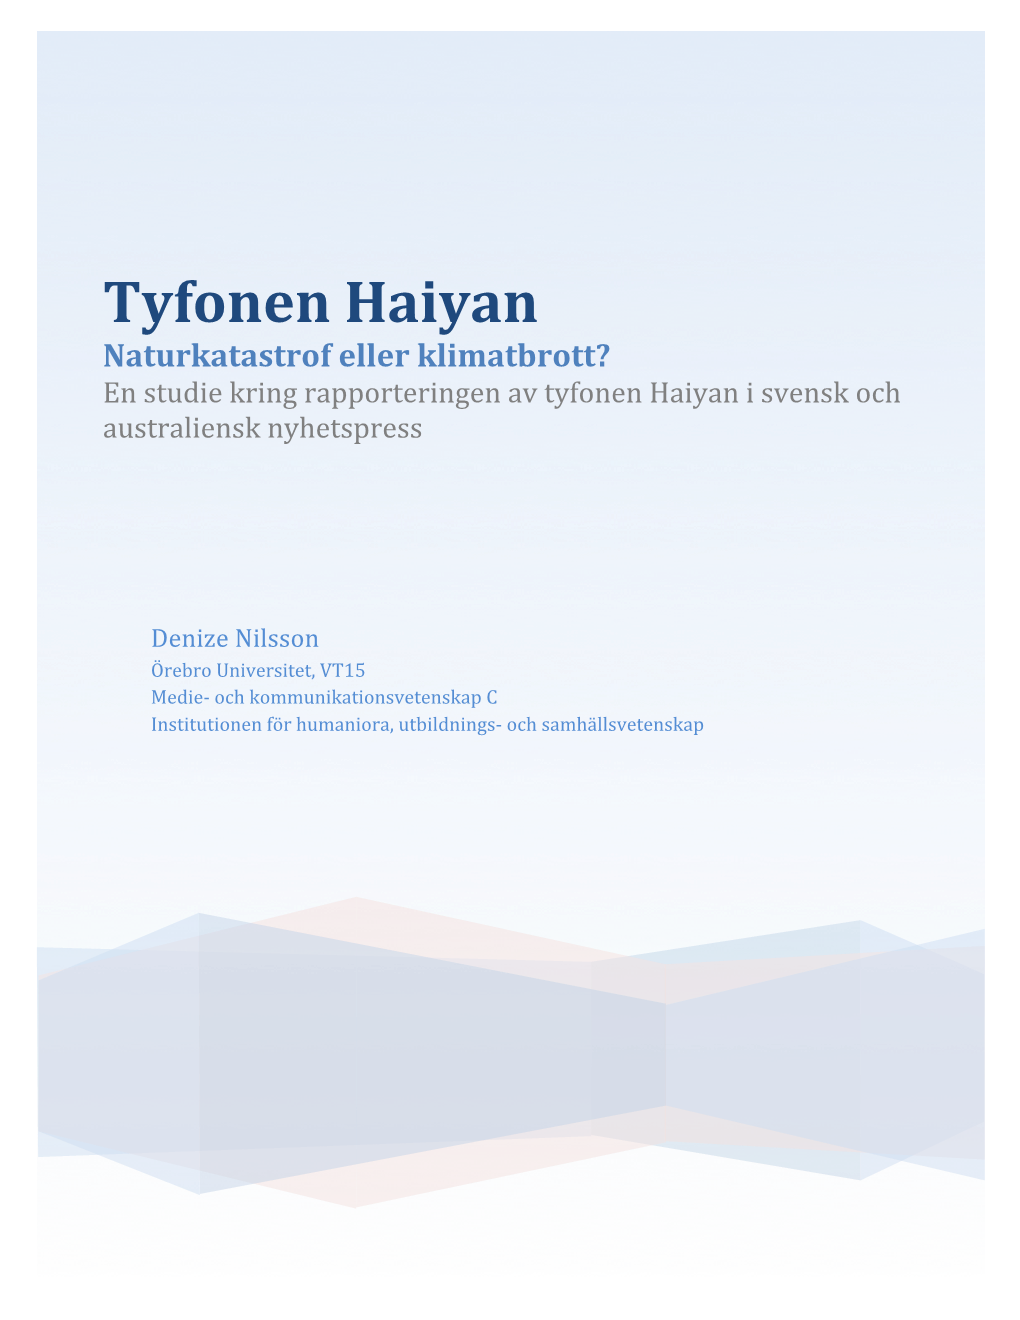 Tyfonen Haiyan Naturkatastrof Eller Klimatbrott? En Studie Kring Rapporteringen Av Tyfonen Haiyan I Svensk Och Australiensk Nyhetspress